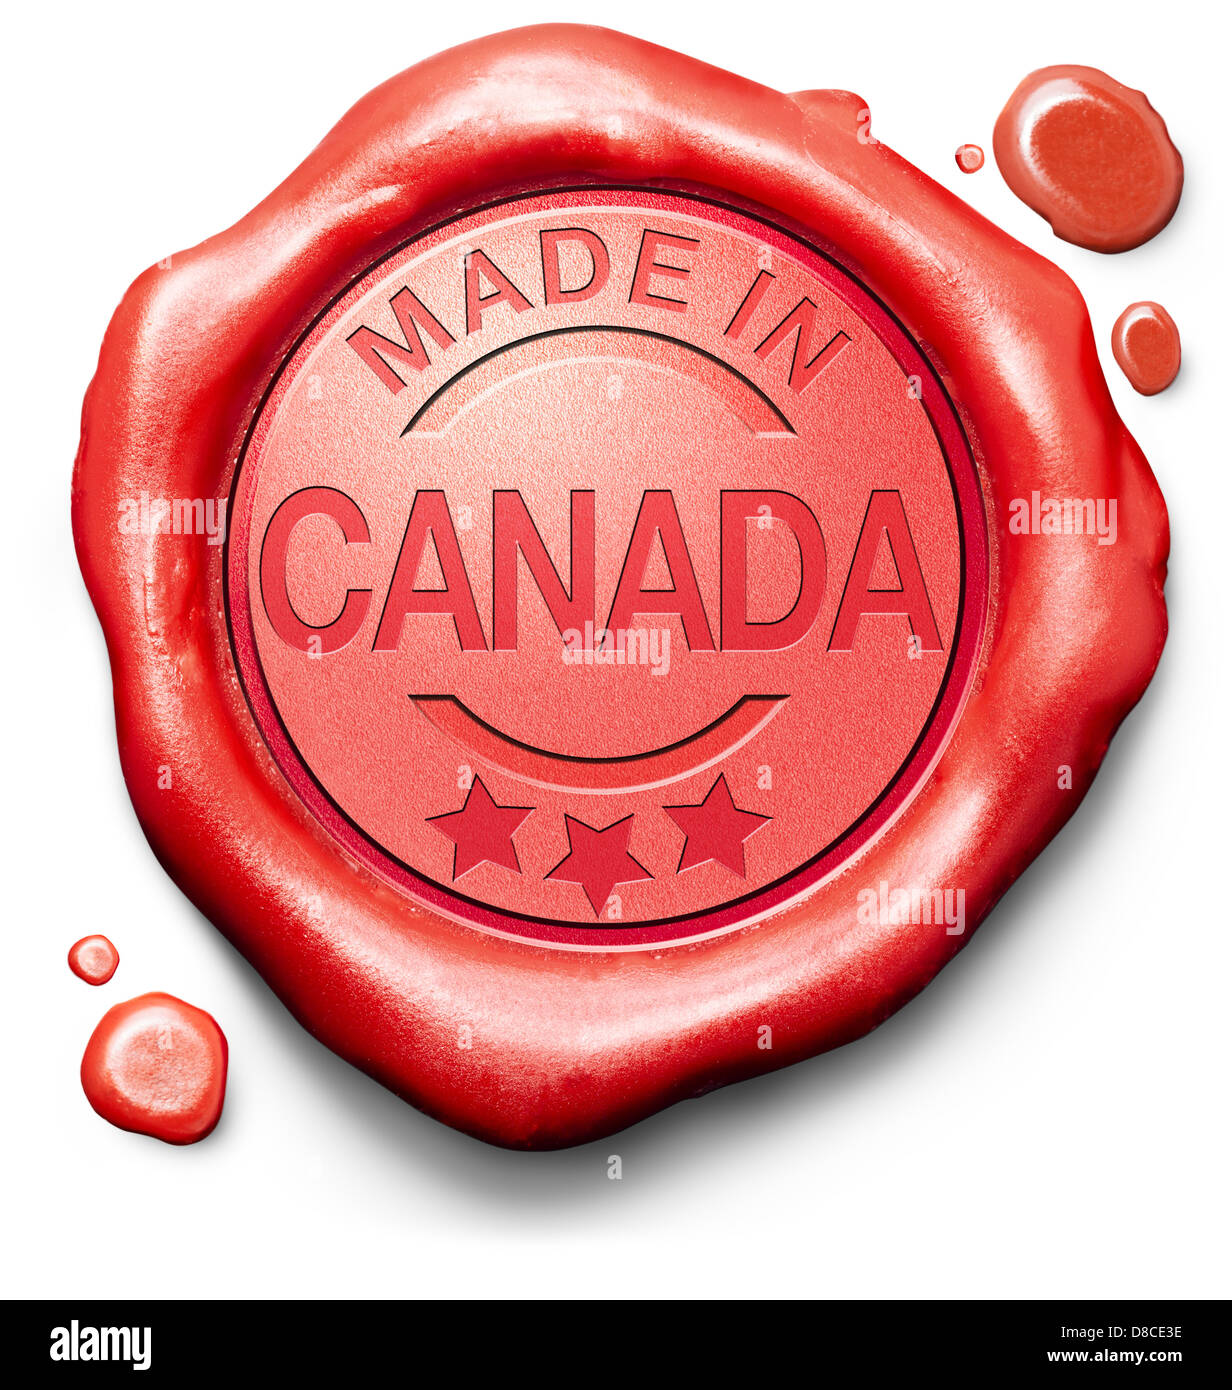 hergestellt in Kanada Originalprodukt kaufen lokale kaufen authentischen kanadischen Label roten Wachs Stempel Qualitätssiegel Stockfoto